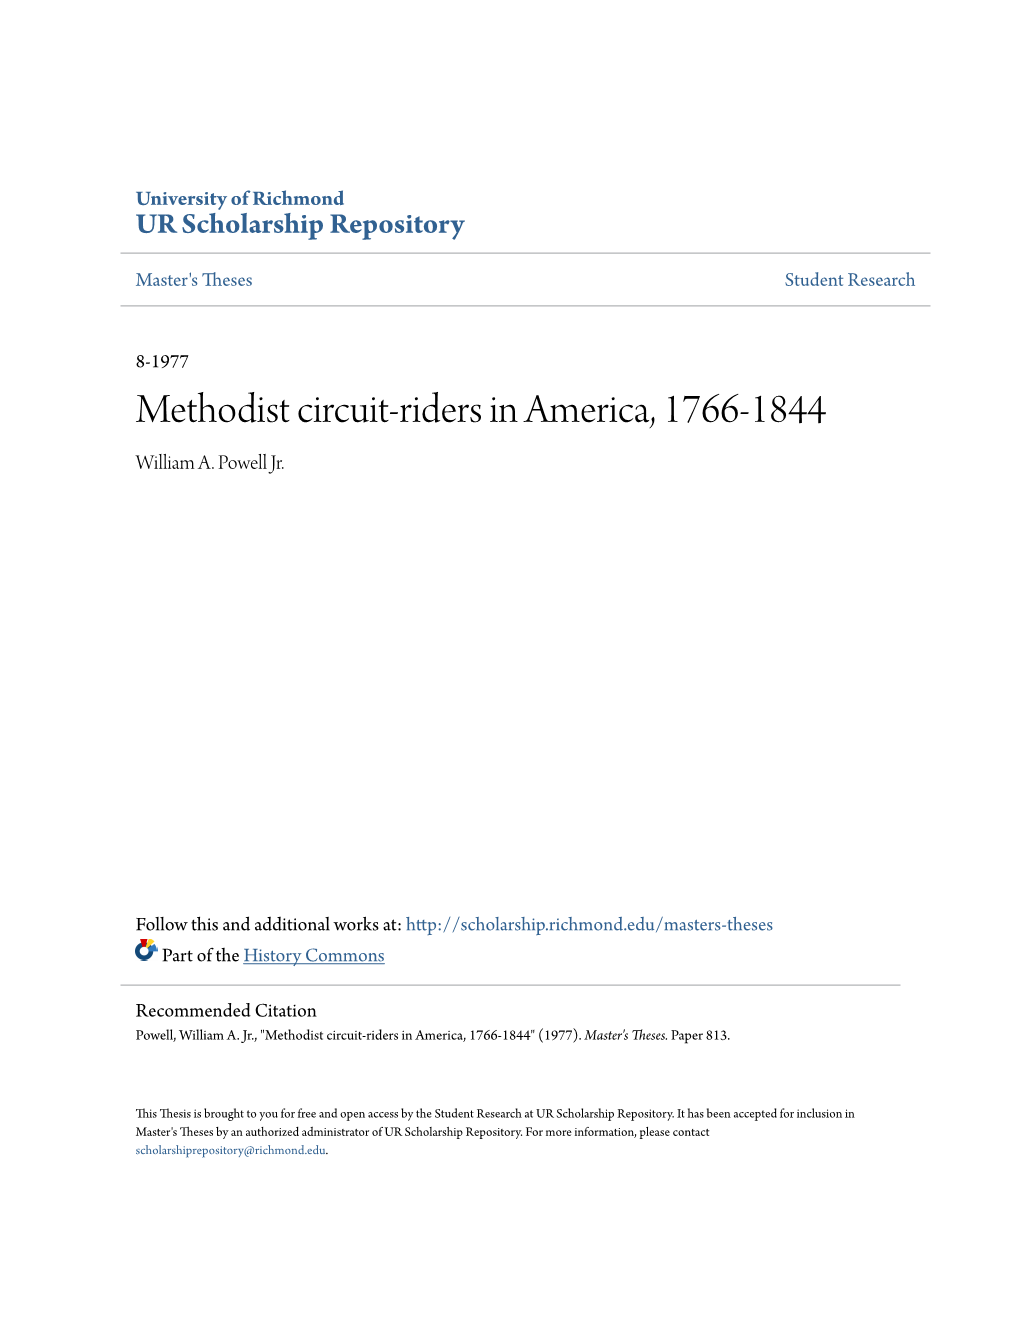 Methodist Circuit-Riders in America, 1766-1844 William A